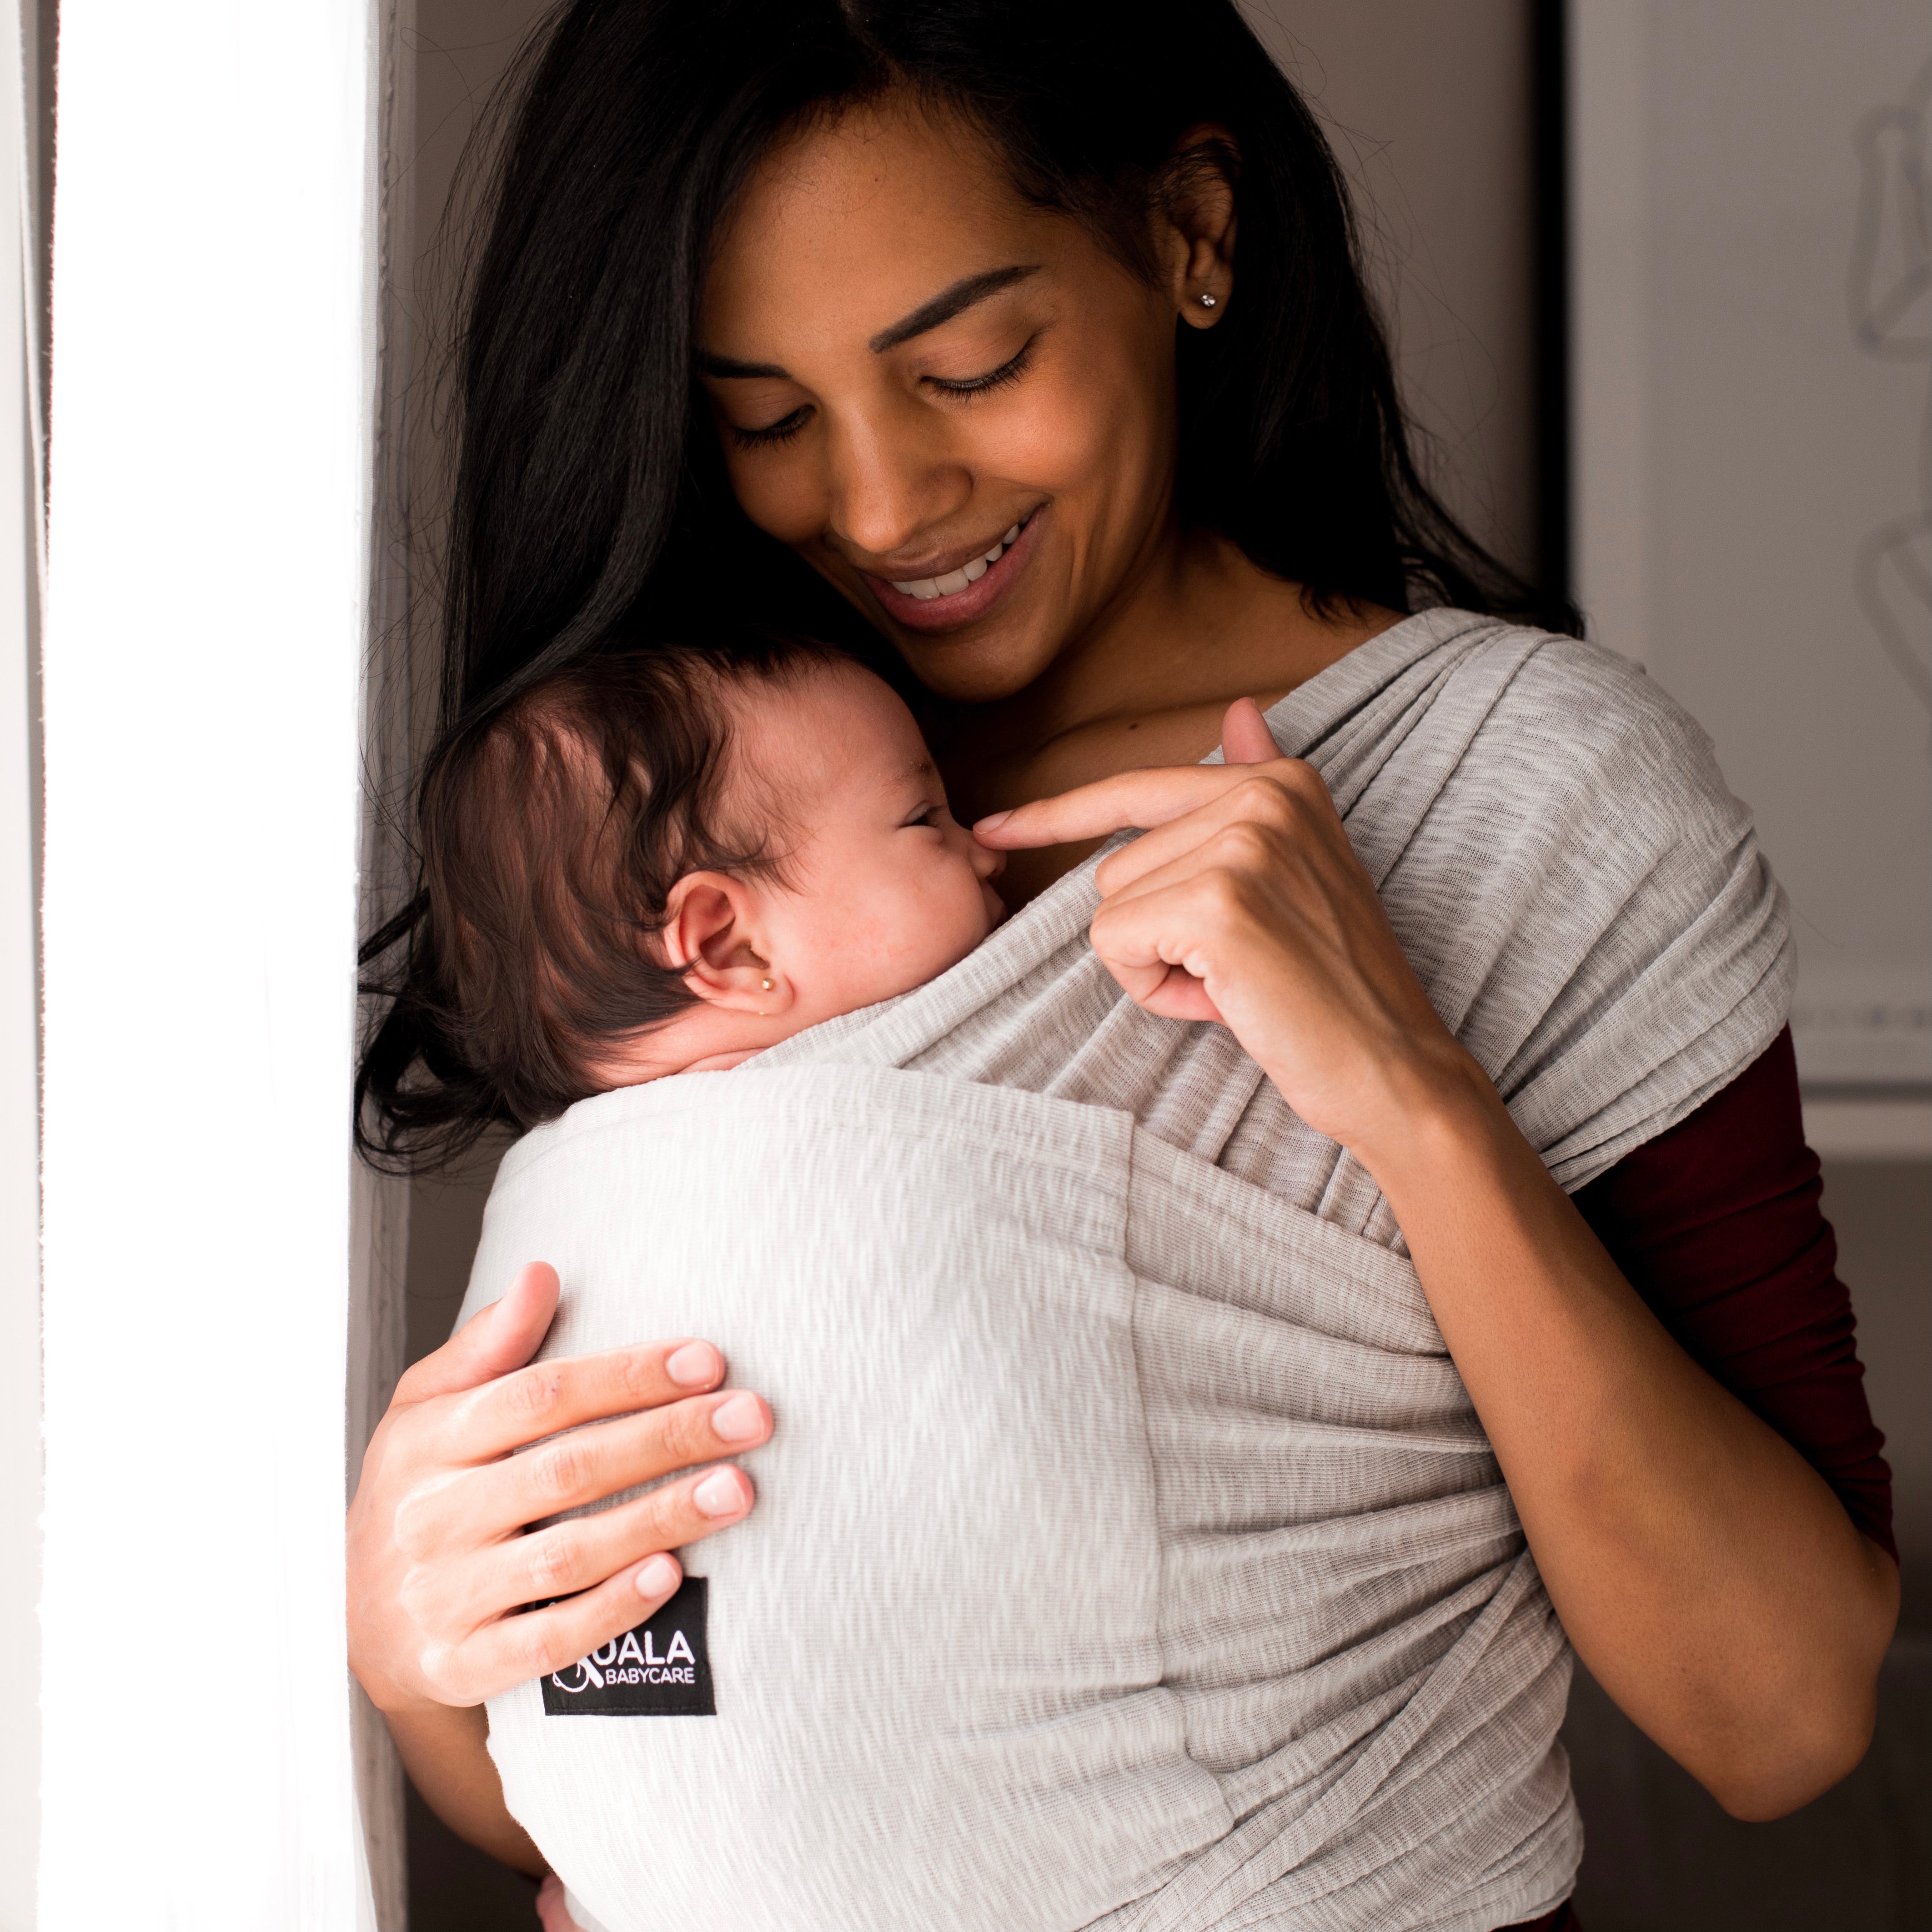 Cómo manejar a un recién nacido - Criar con Sentido Común